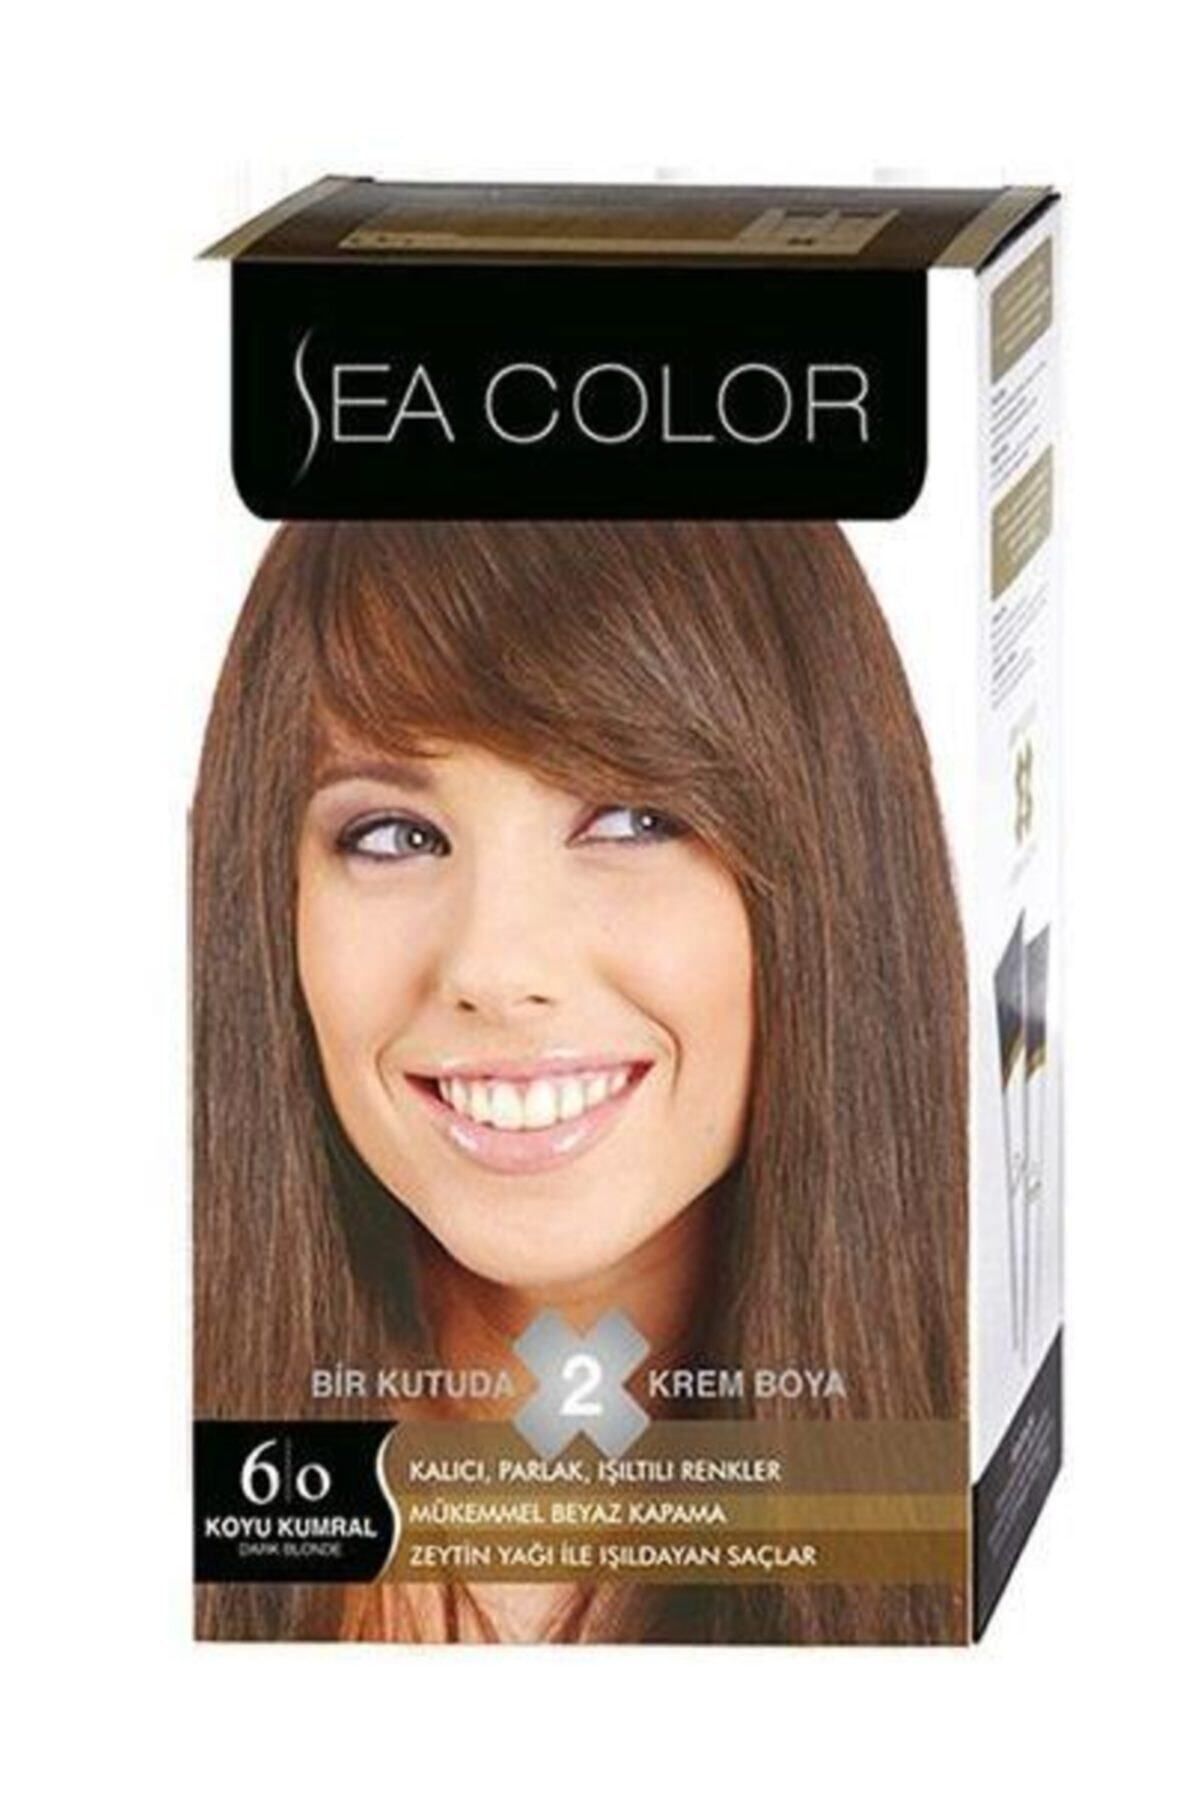 Sea Color 2'li Krem Saç Boyası 6/0 Koyu Kumral 8698753382027